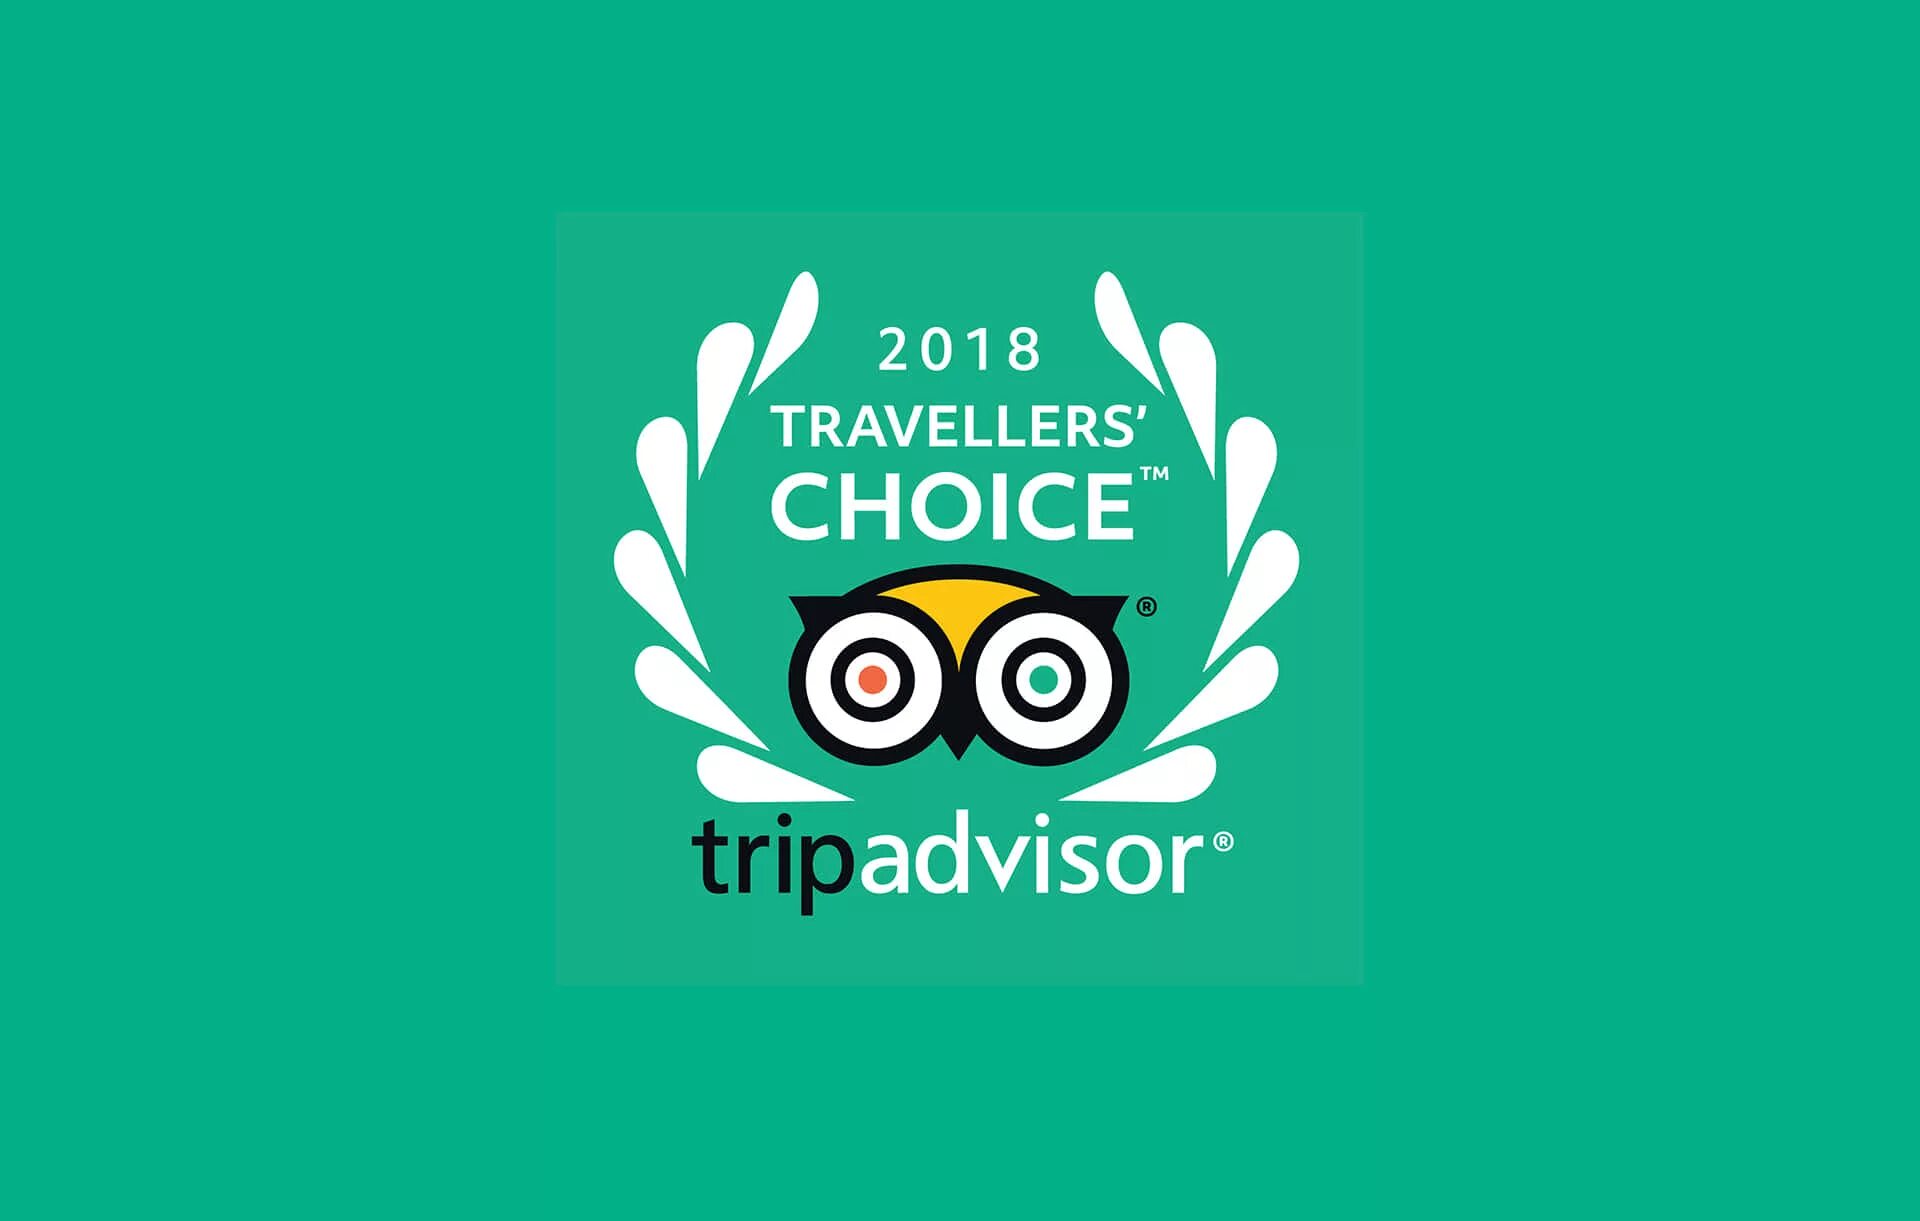 Travel choice. Travellers choice 2021. Travellers choice 2020. Награда travellers' choice. Travellers choice TRIPADVISOR 2020.